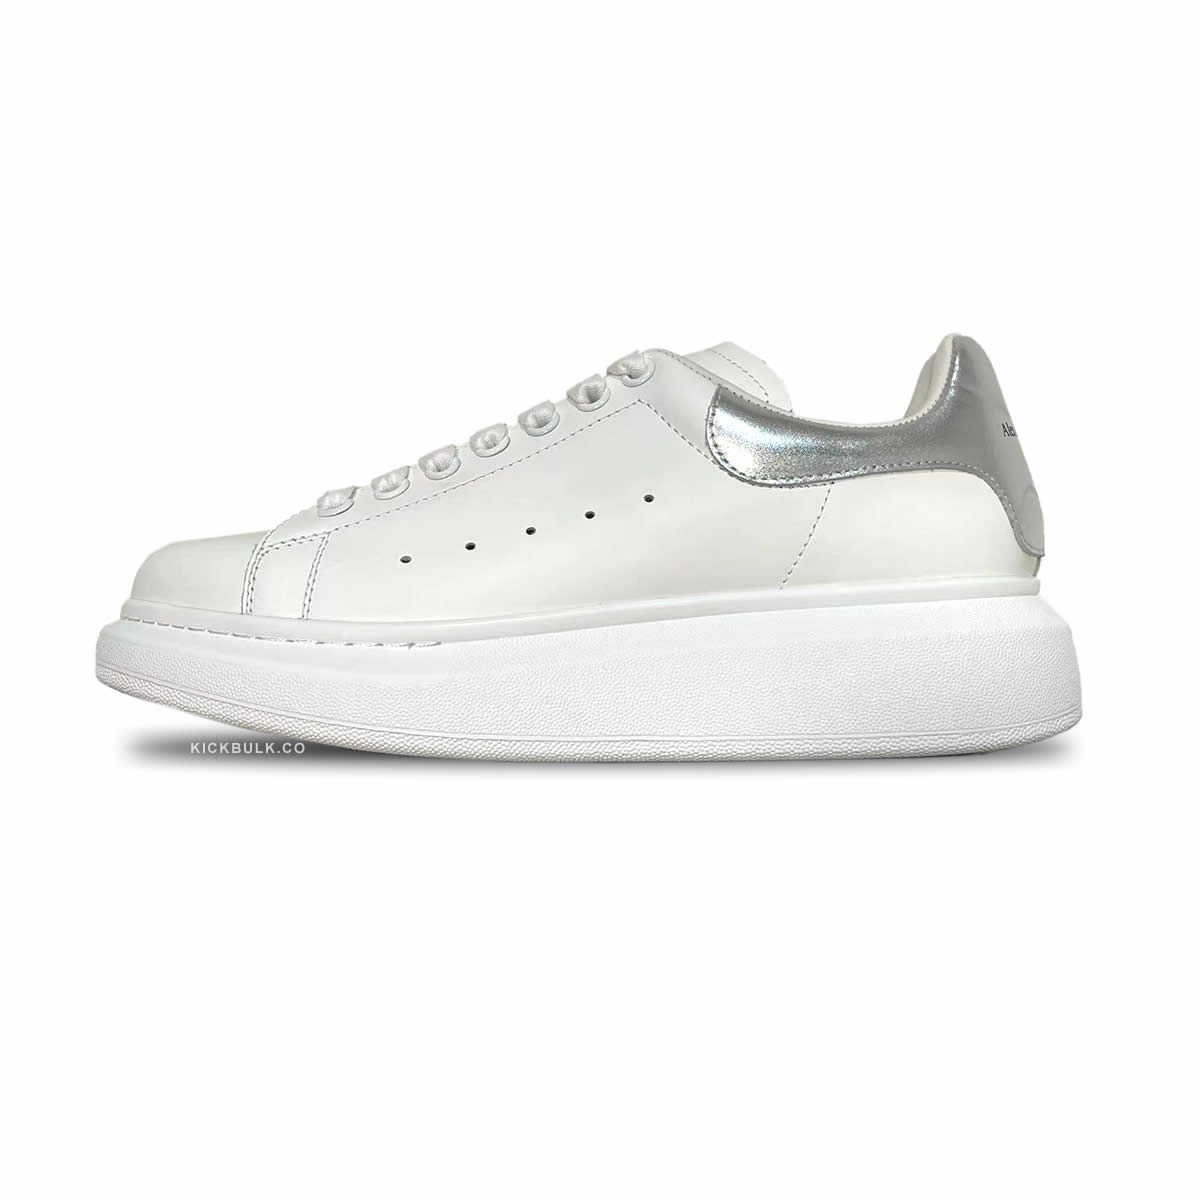 Alexander Sneaker White Silver 663690whgp5200291 1 - www.kickbulk.cc